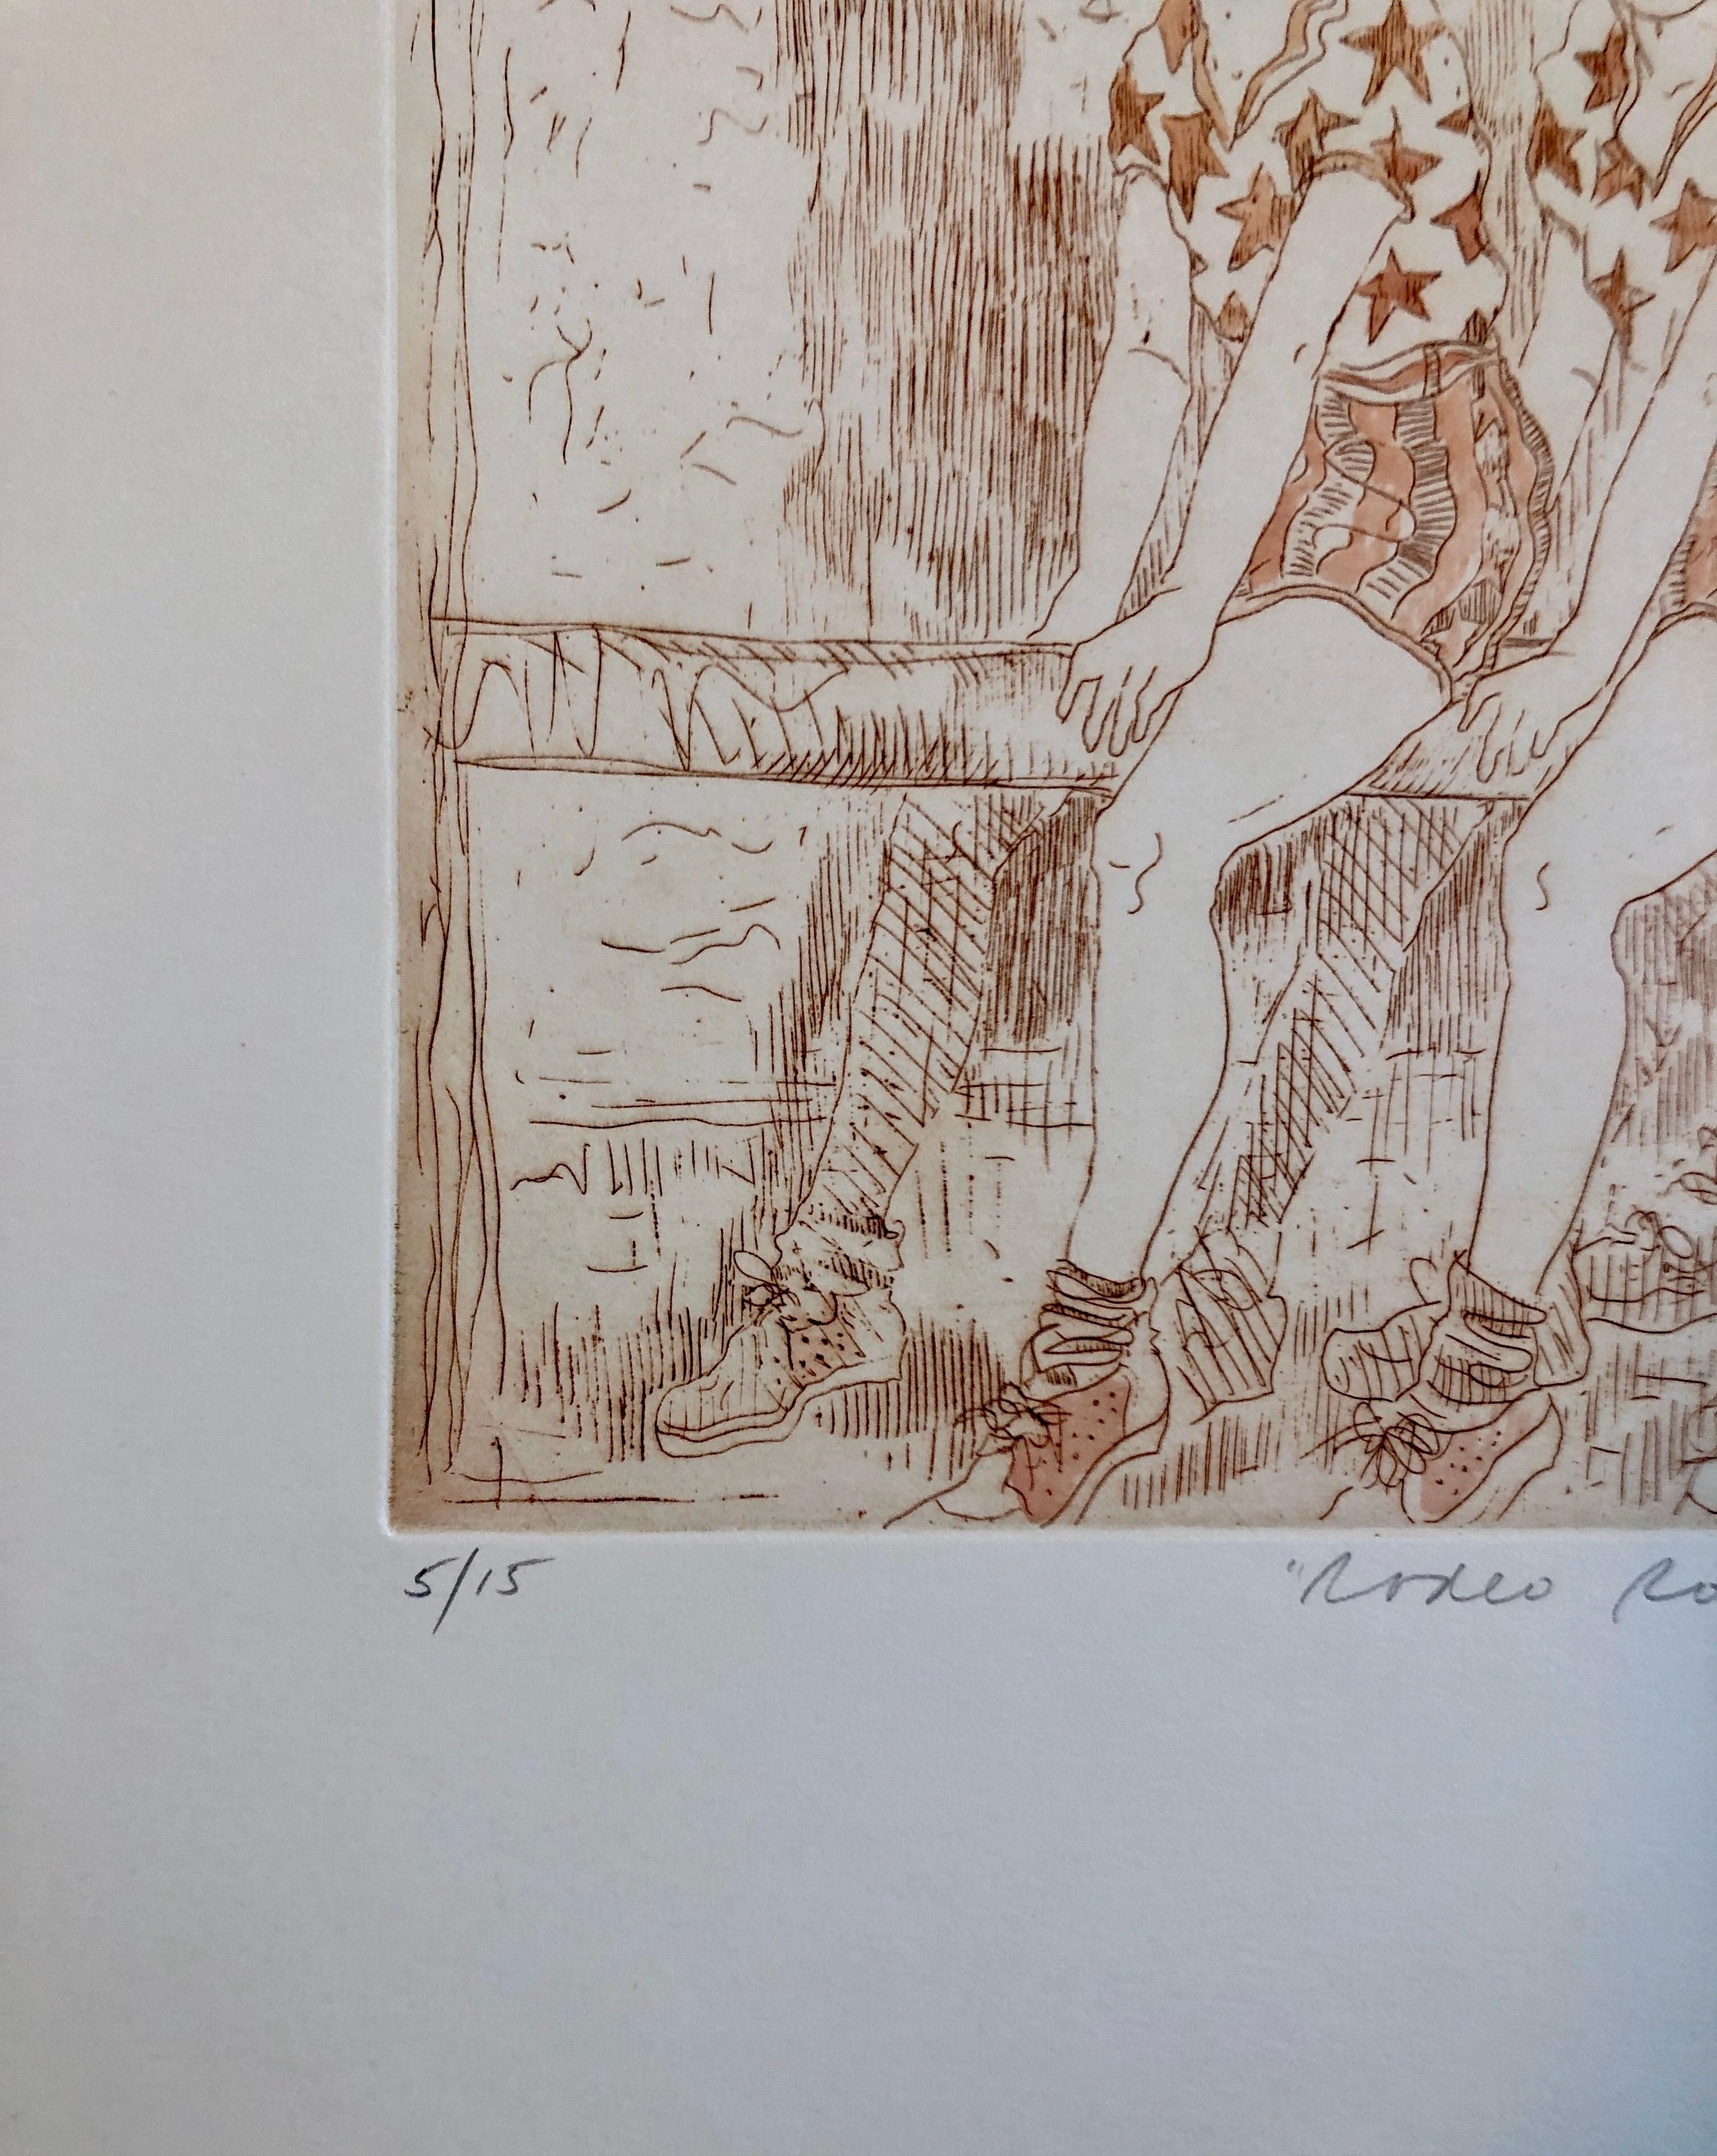 Überschrift: Rodeo-Rose
Ann Chernow (Connecticut, geb. 1936) Radierung. Unten rechts mit Bleistift signiert 